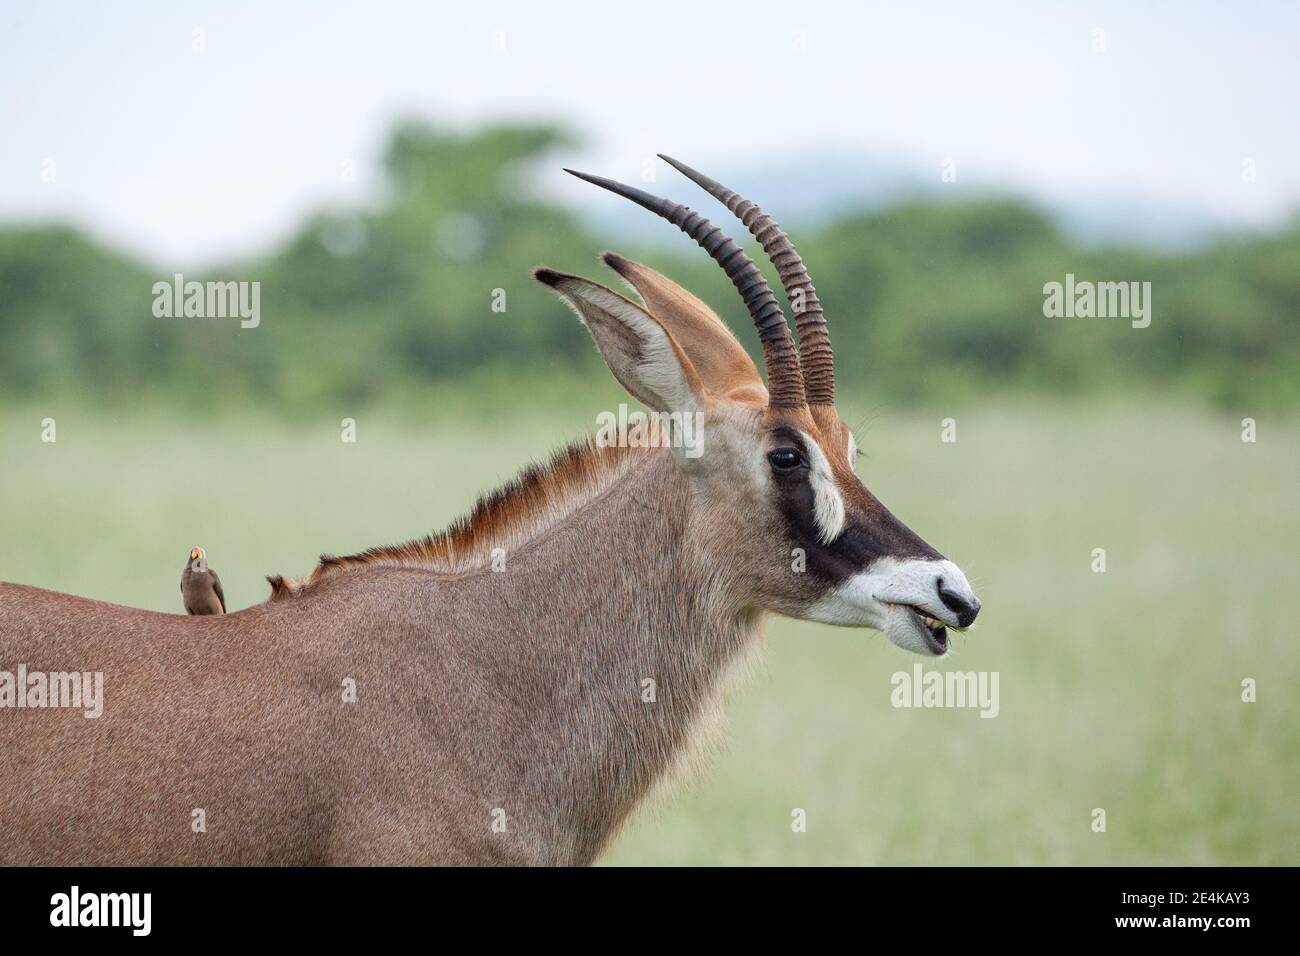 Antelope de Roan, Hippotragus équinus. Oxpeckers biorrés Buphagus erythorhynchus, sur son épaule. Parasites, symbiose, chaîne alimentaire, Botswana. Afrique. Banque D'Images